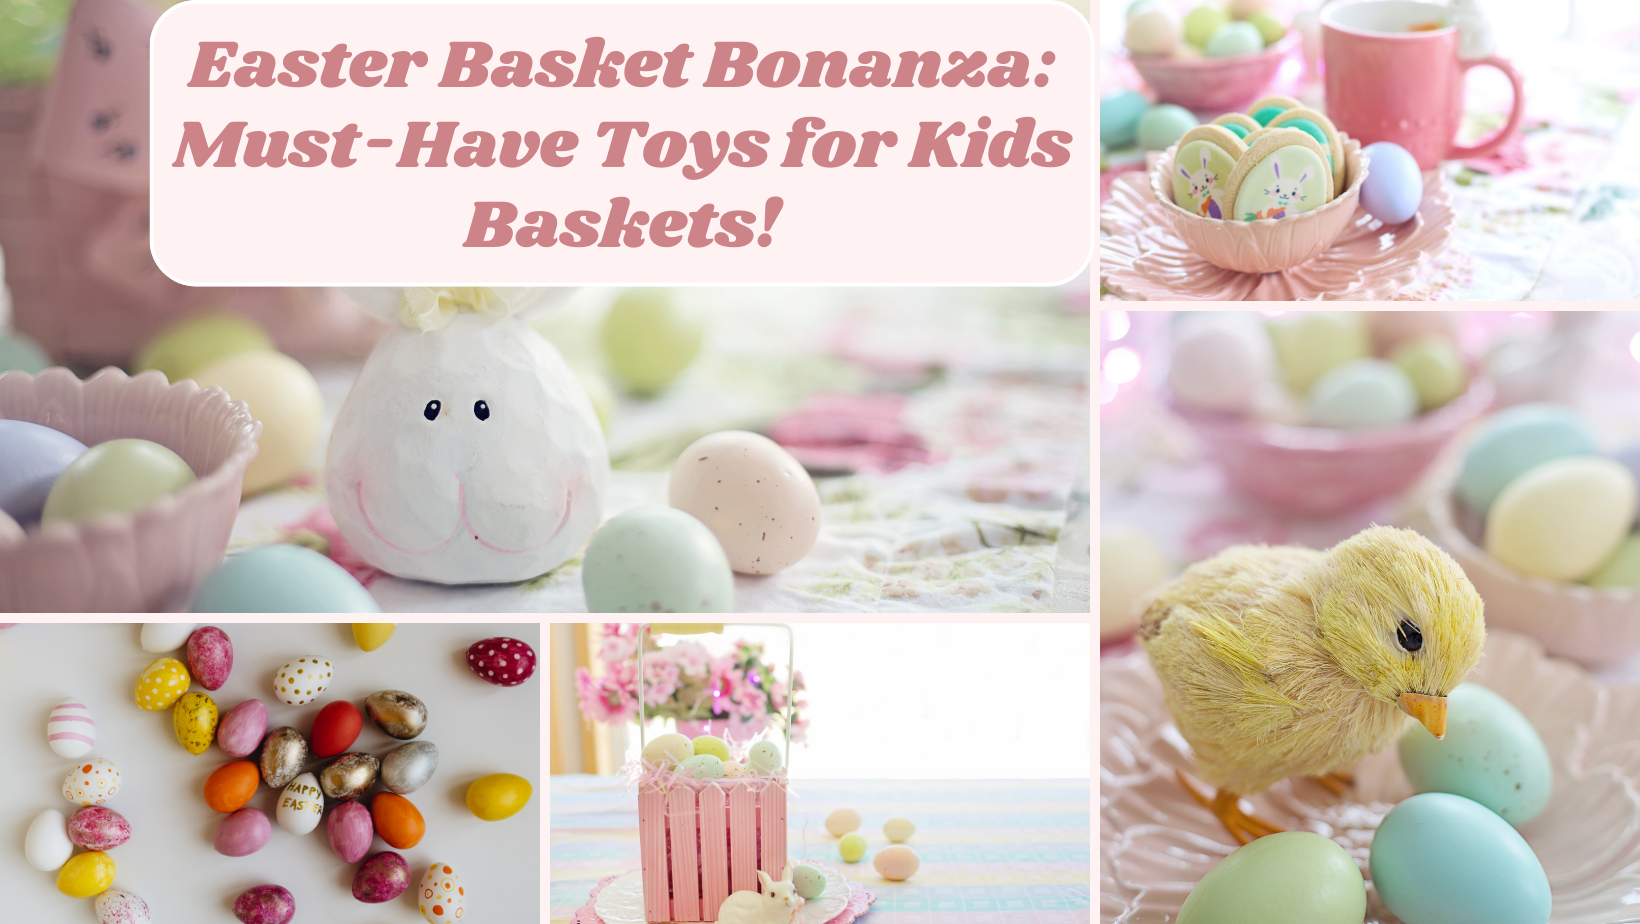 Easter Basket Bonanza: Must-Have Toys for Kids Baskets!